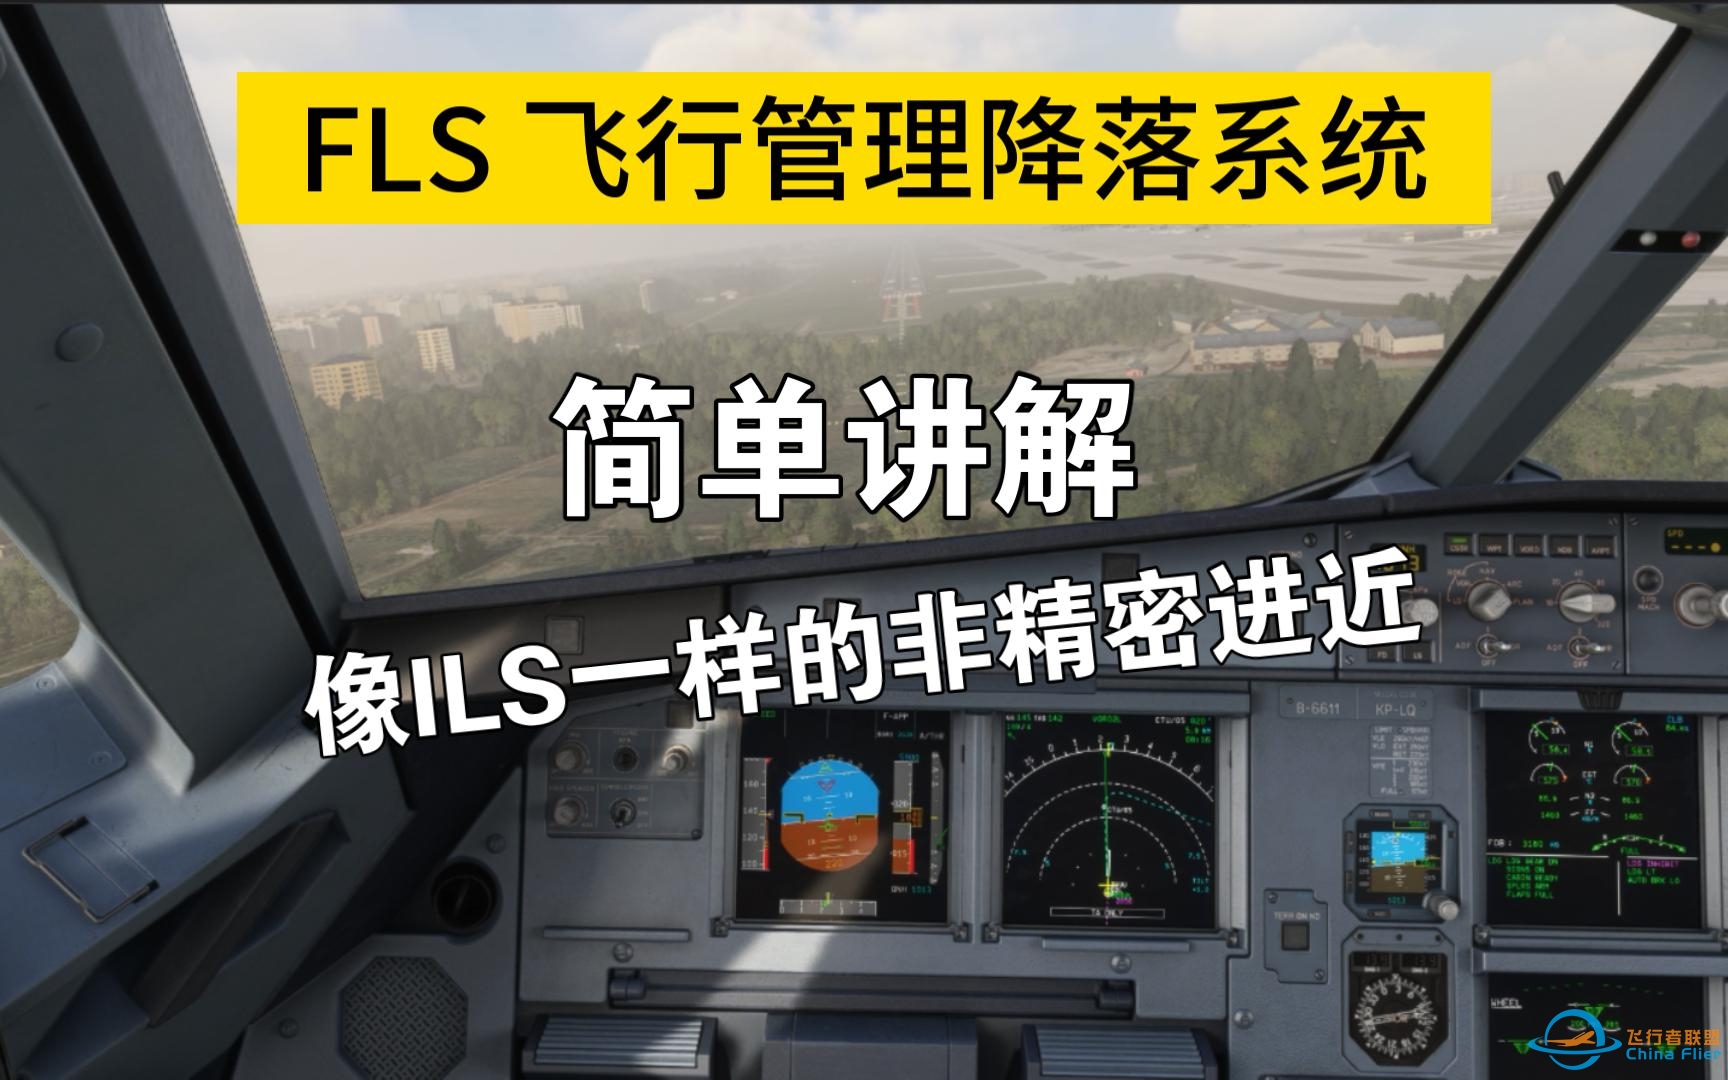 空客FLS飞行管理降落系统 简单讲解 成都双流VOR02L演示-5822 